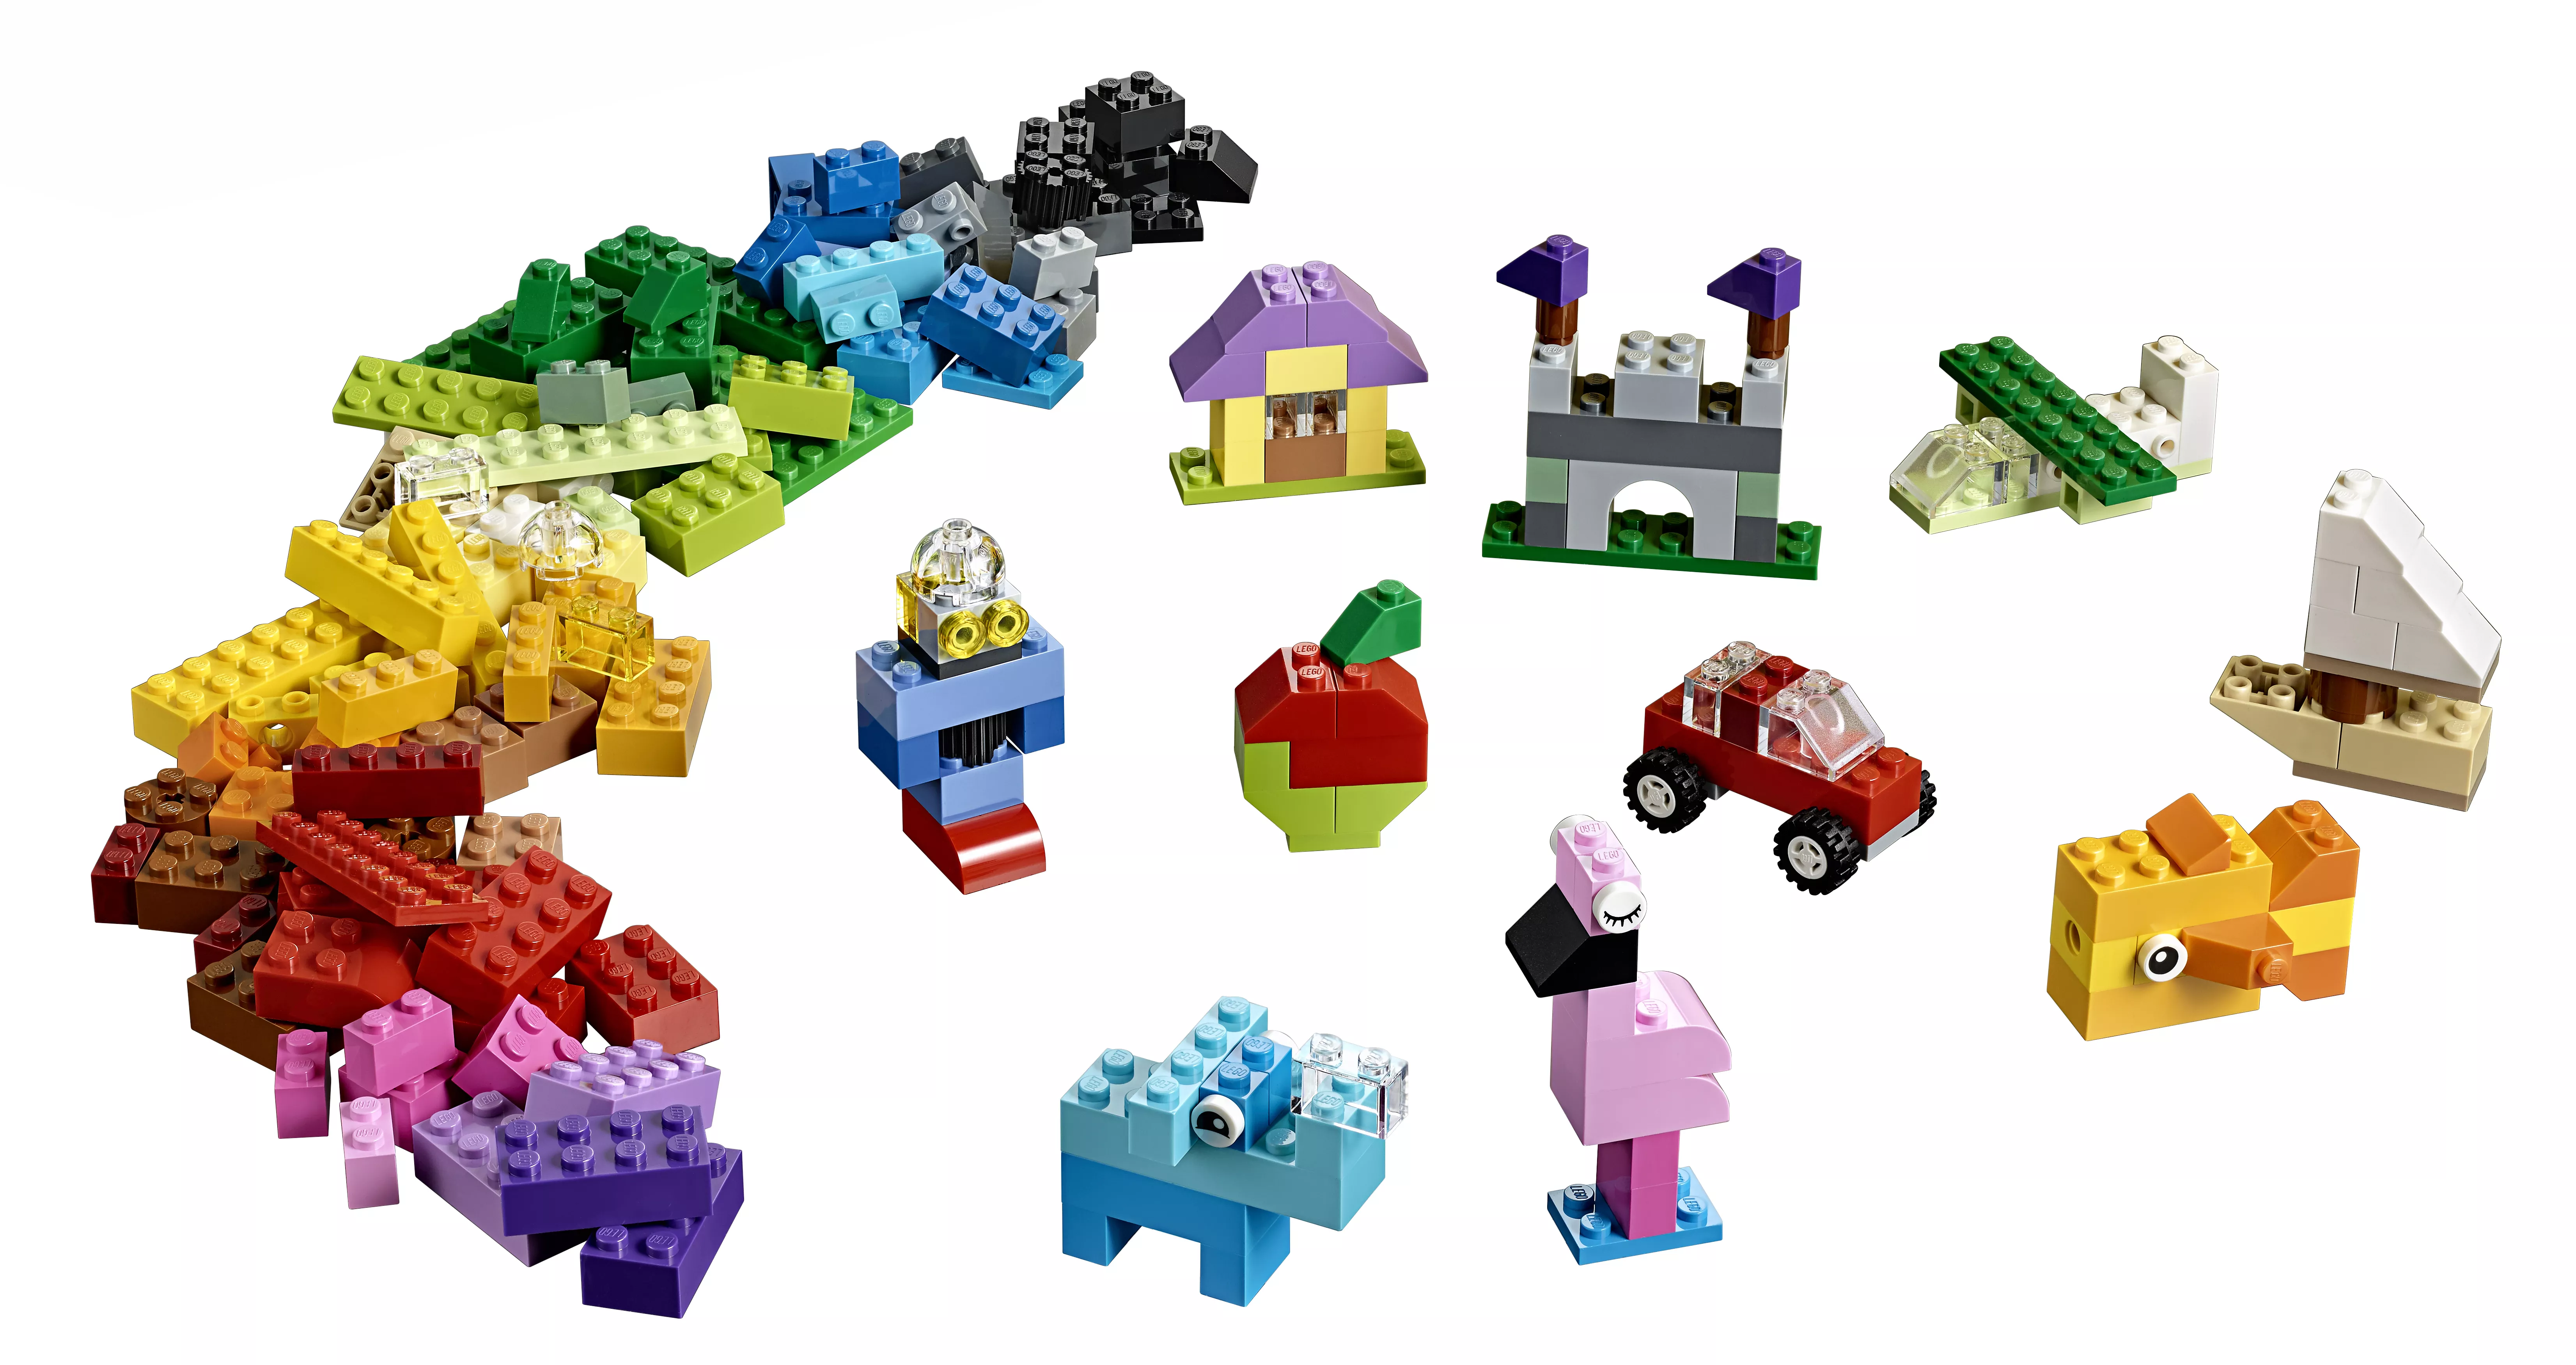 LEGO 10713 Classic Bausteine Starterkoffer - Farben sortieren